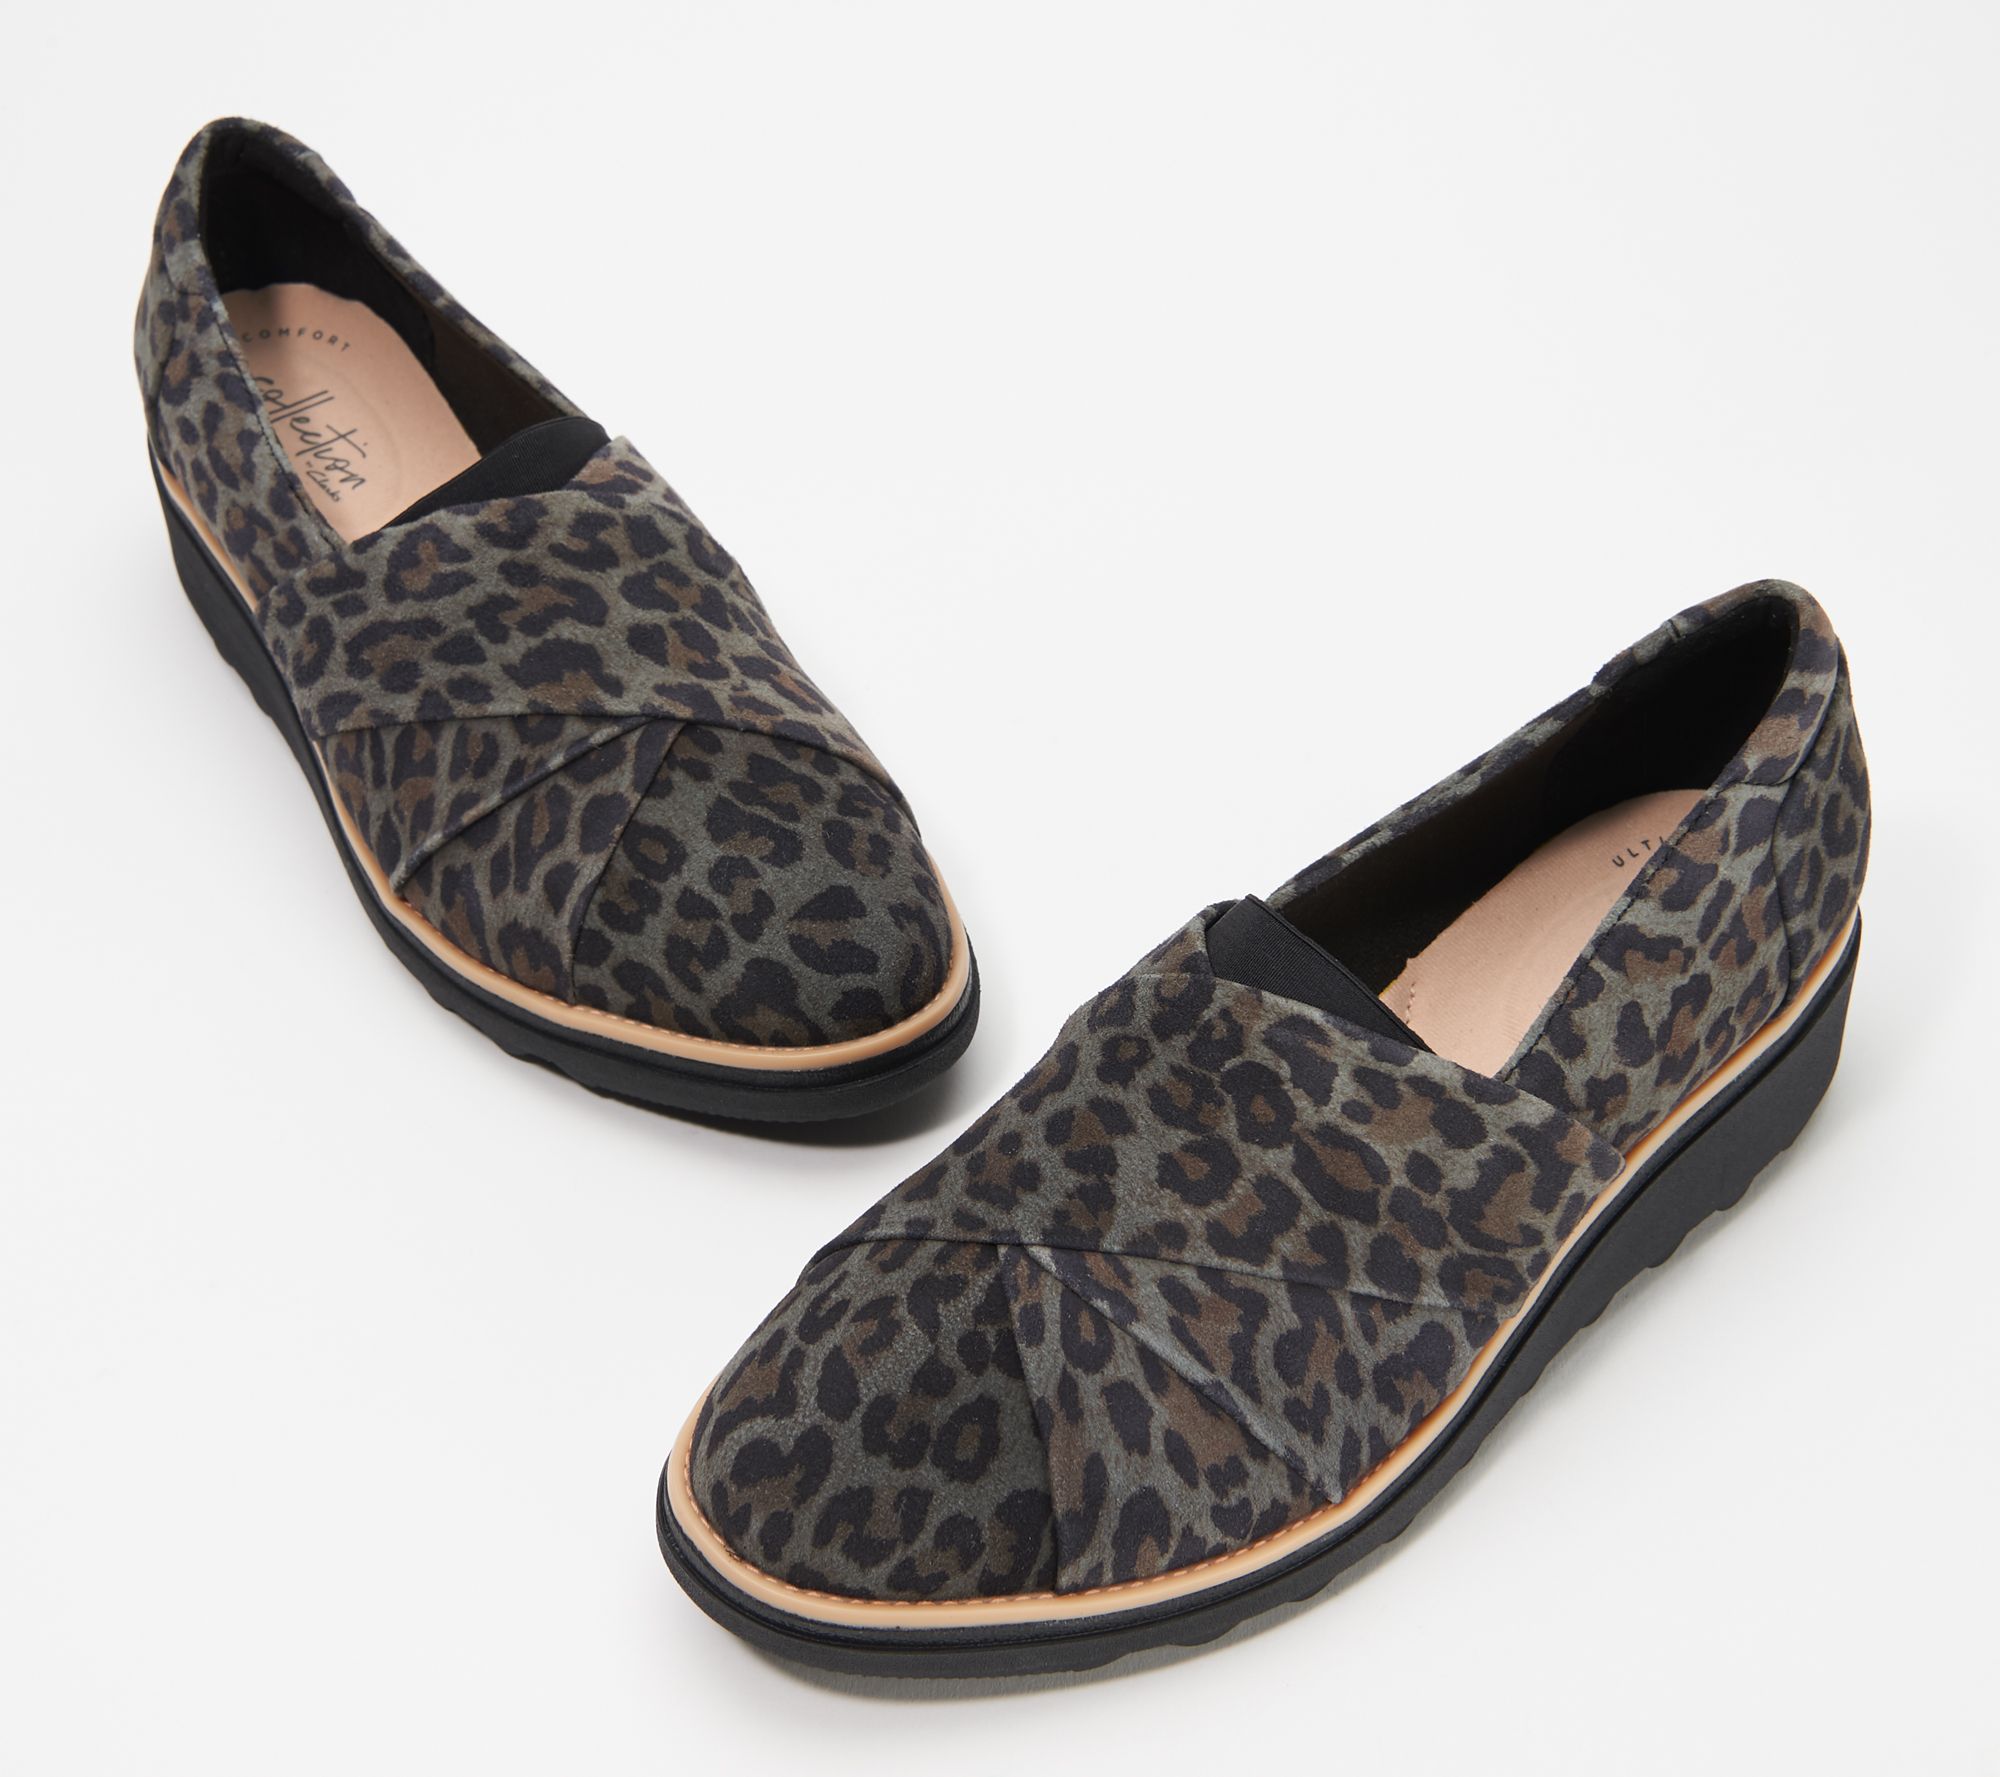 leopard sneaker wedges